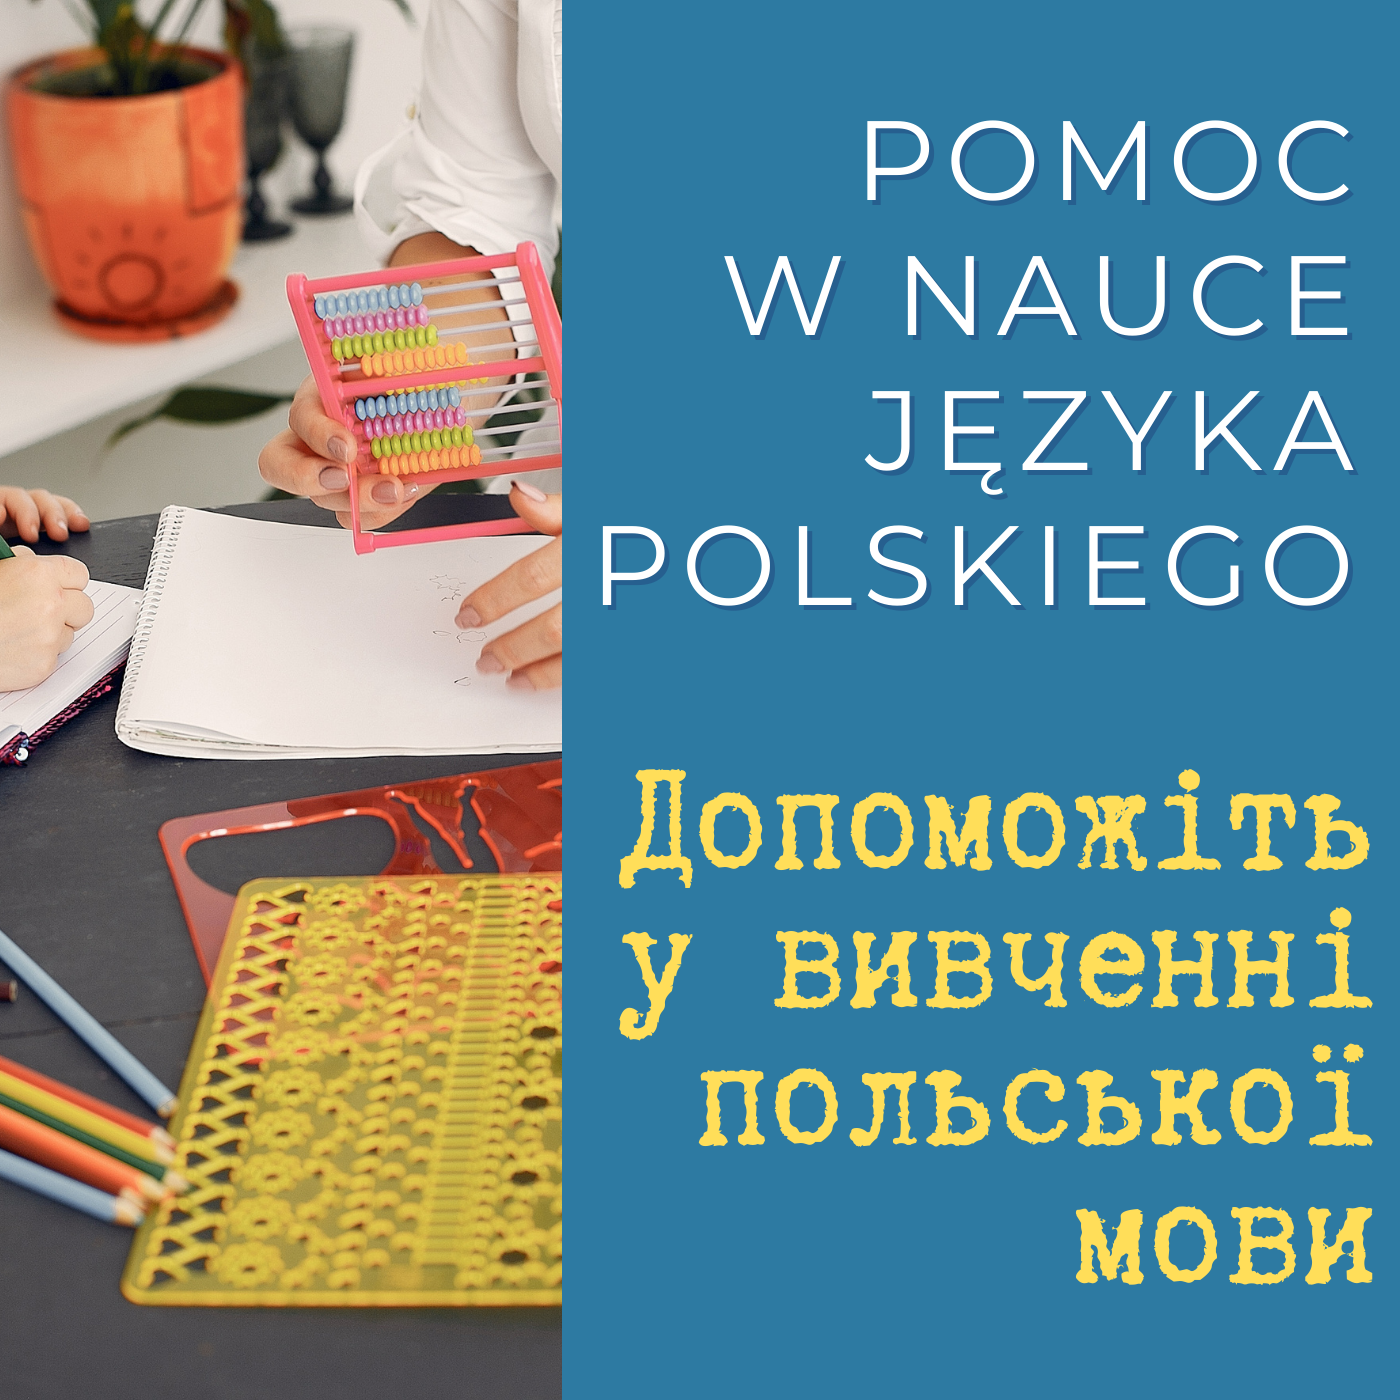 #PomagamUkrainie: pomoc w nauce języka polskiego